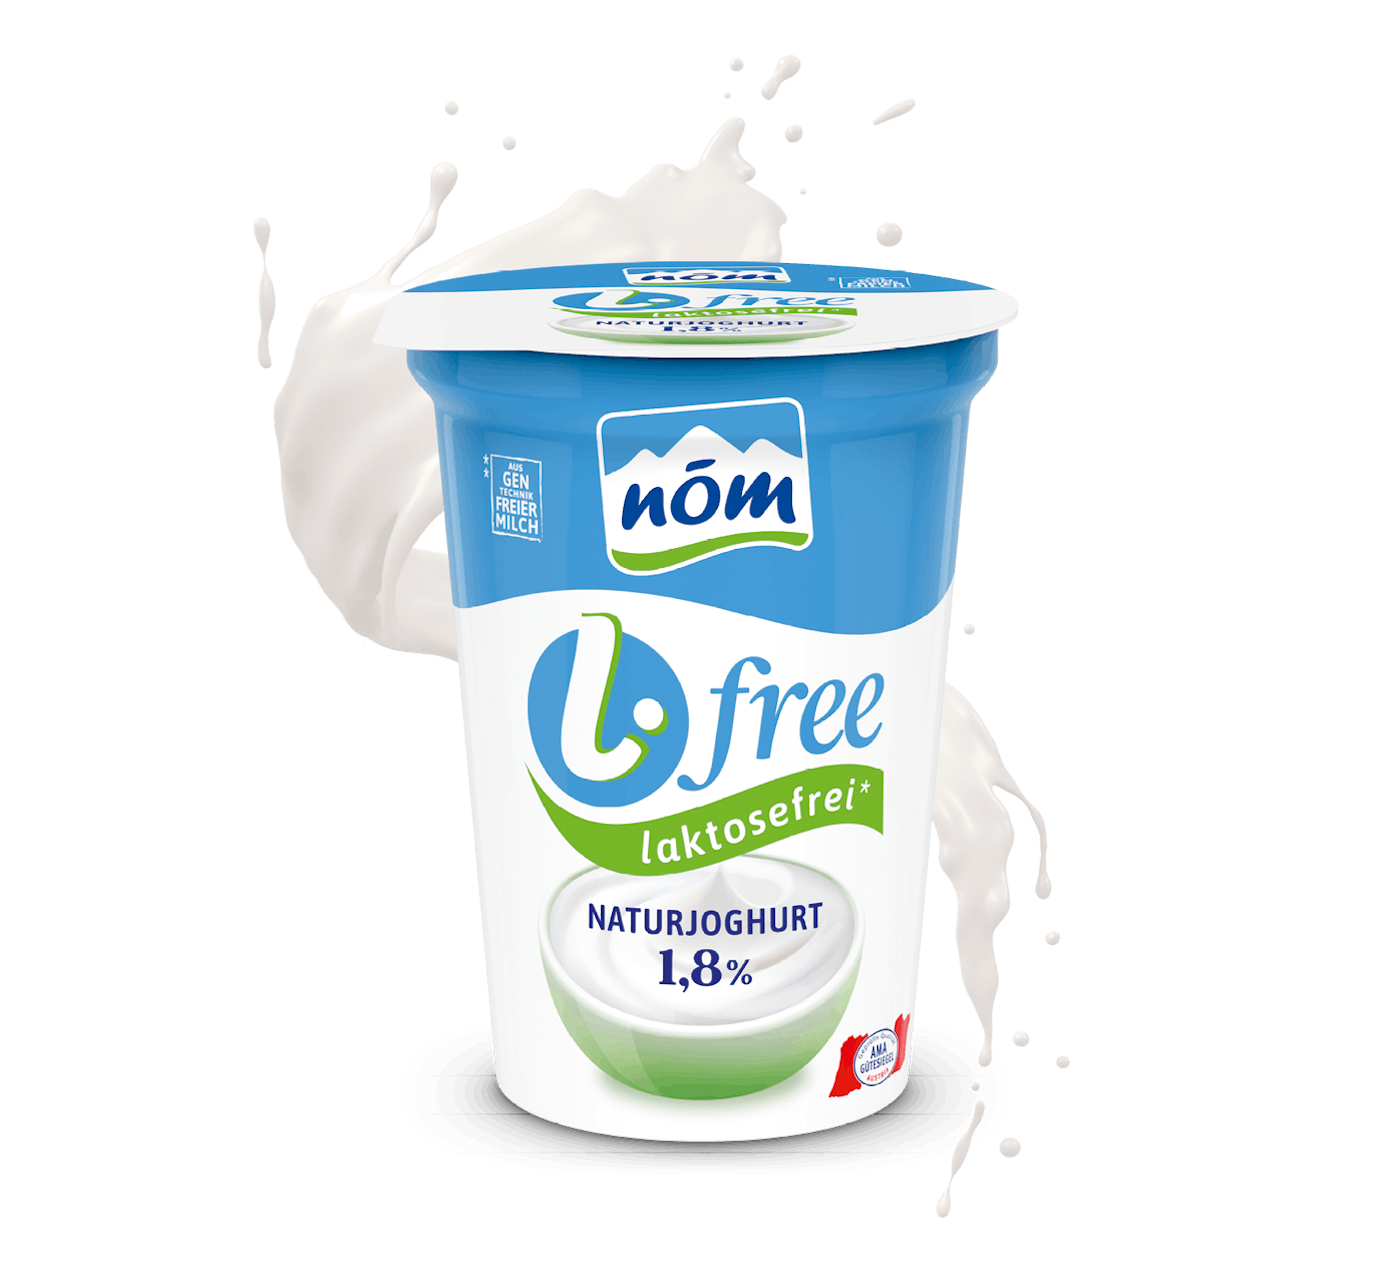 NÖM l.free Naturjoghurt laktosefreie im 200 g Becher mit Milchsplash